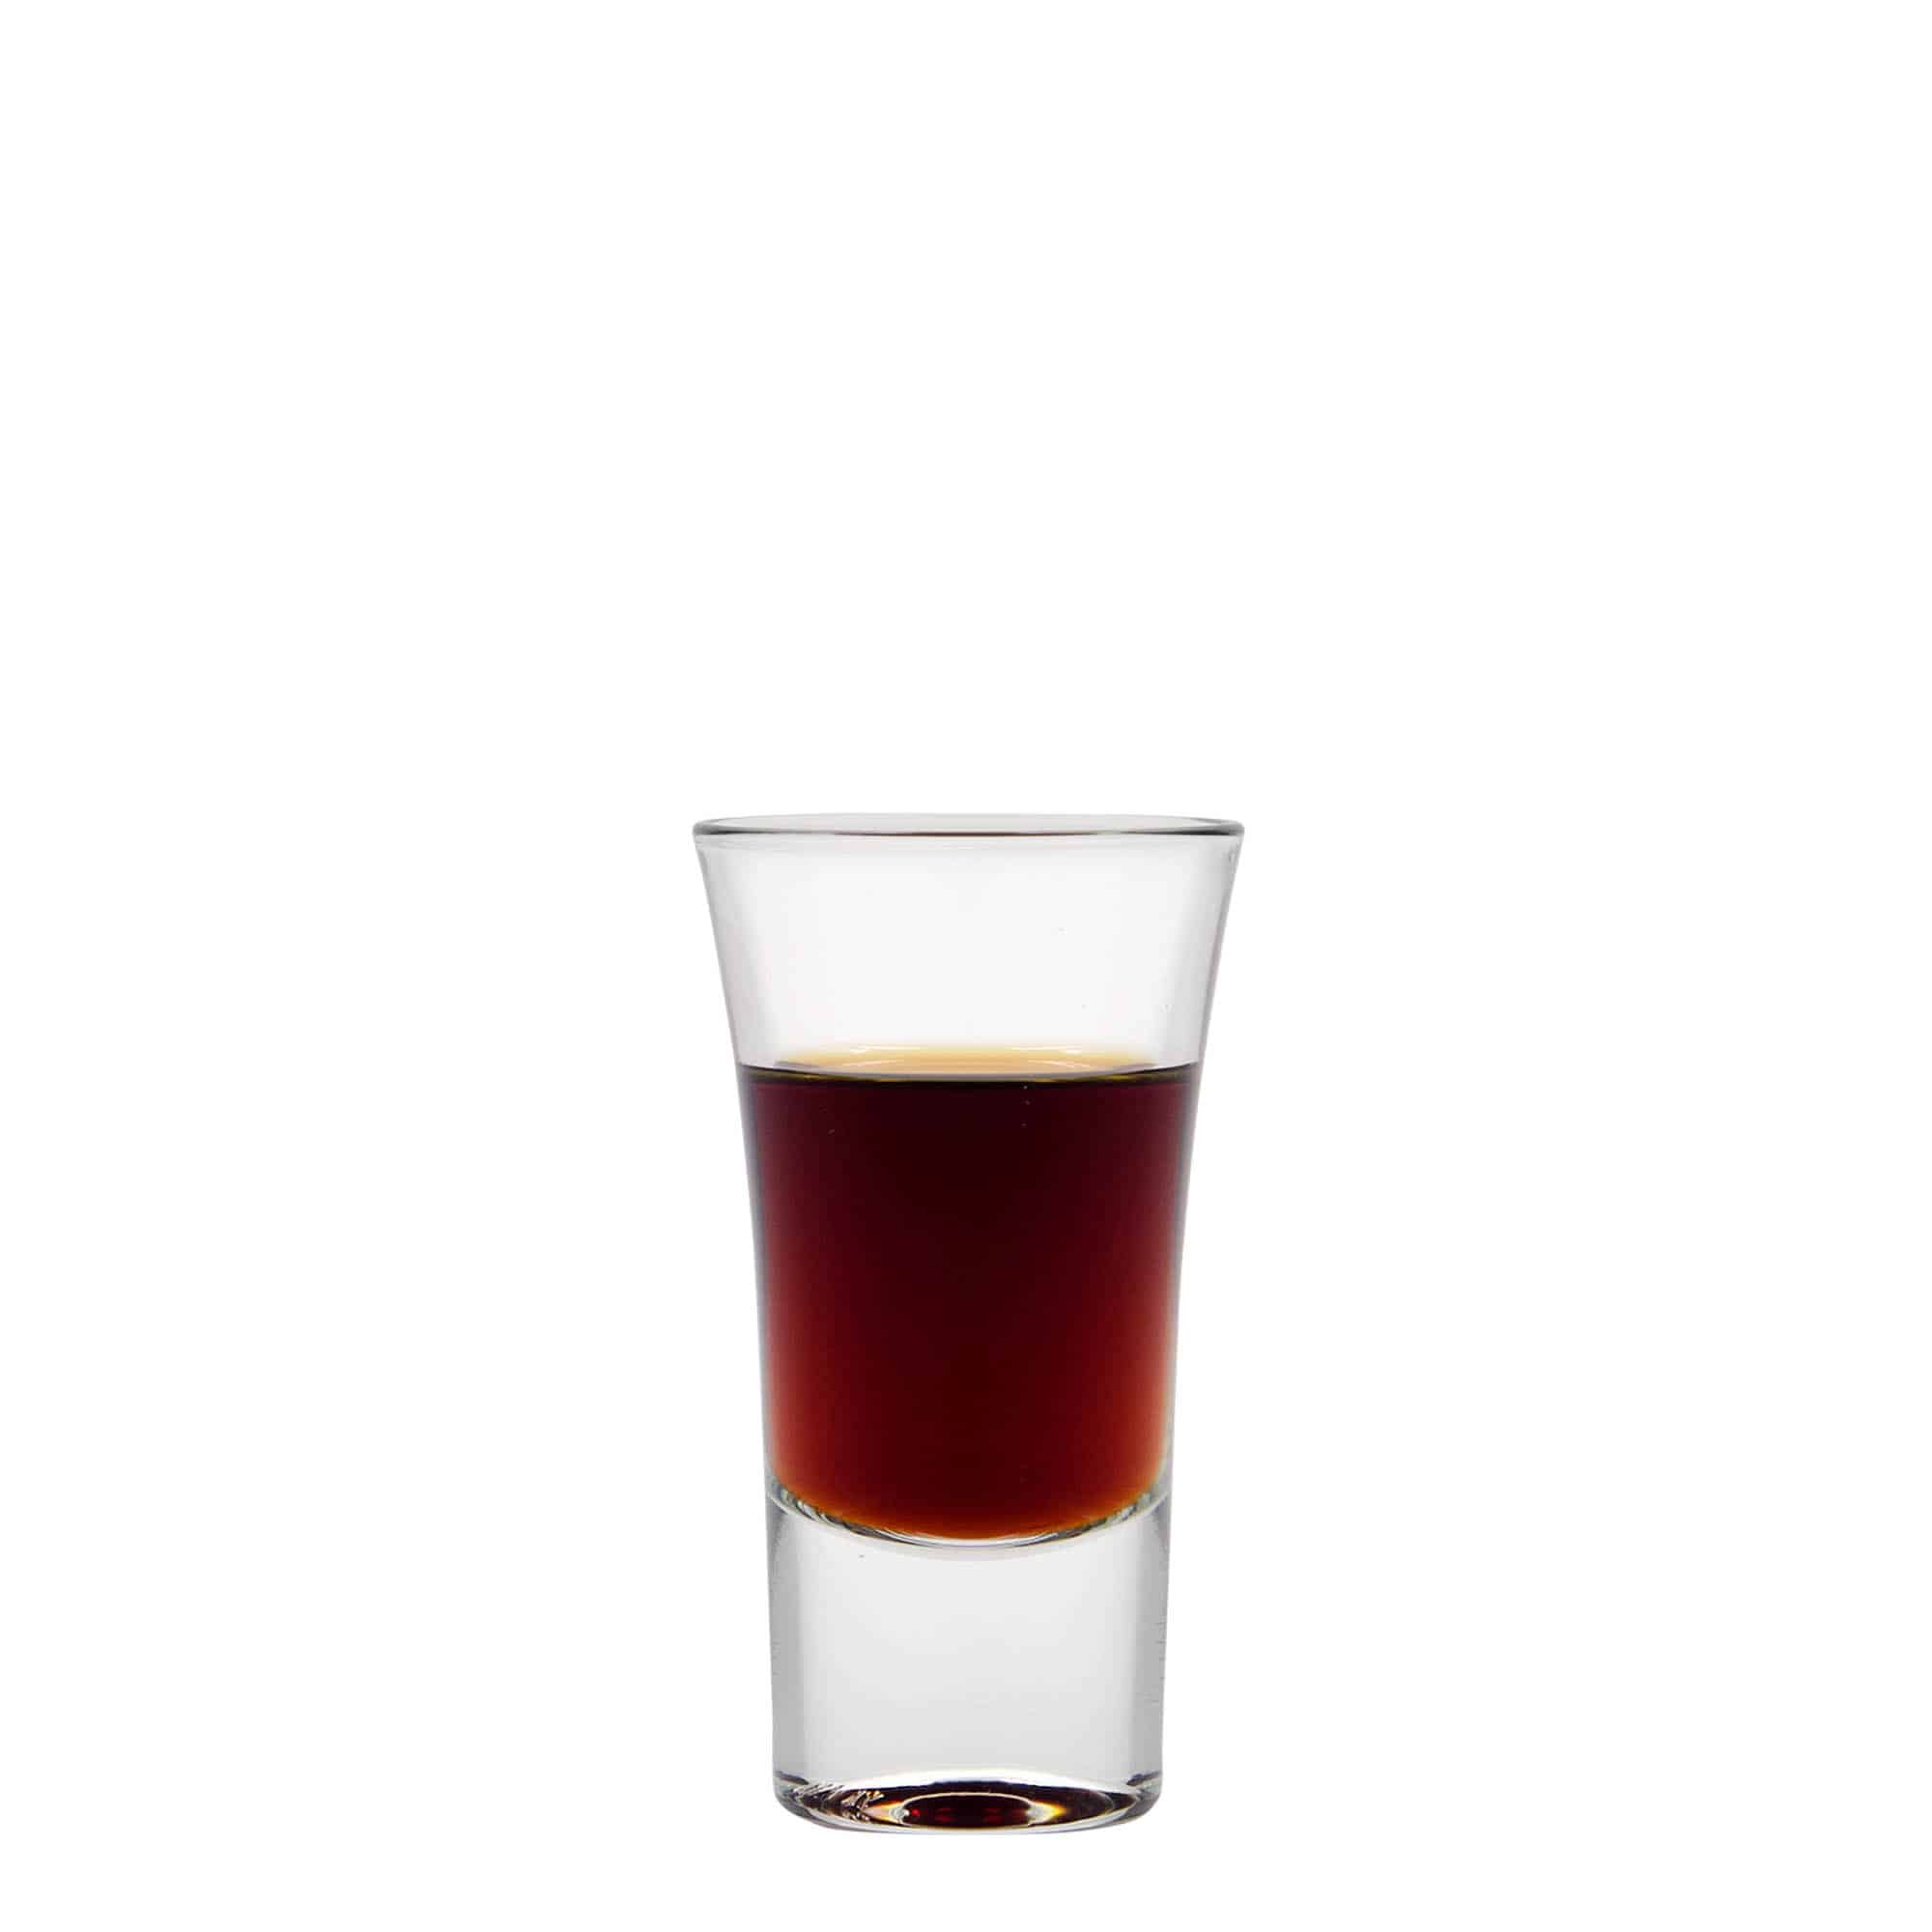 40 ml shot glass 'Seniorstamper'